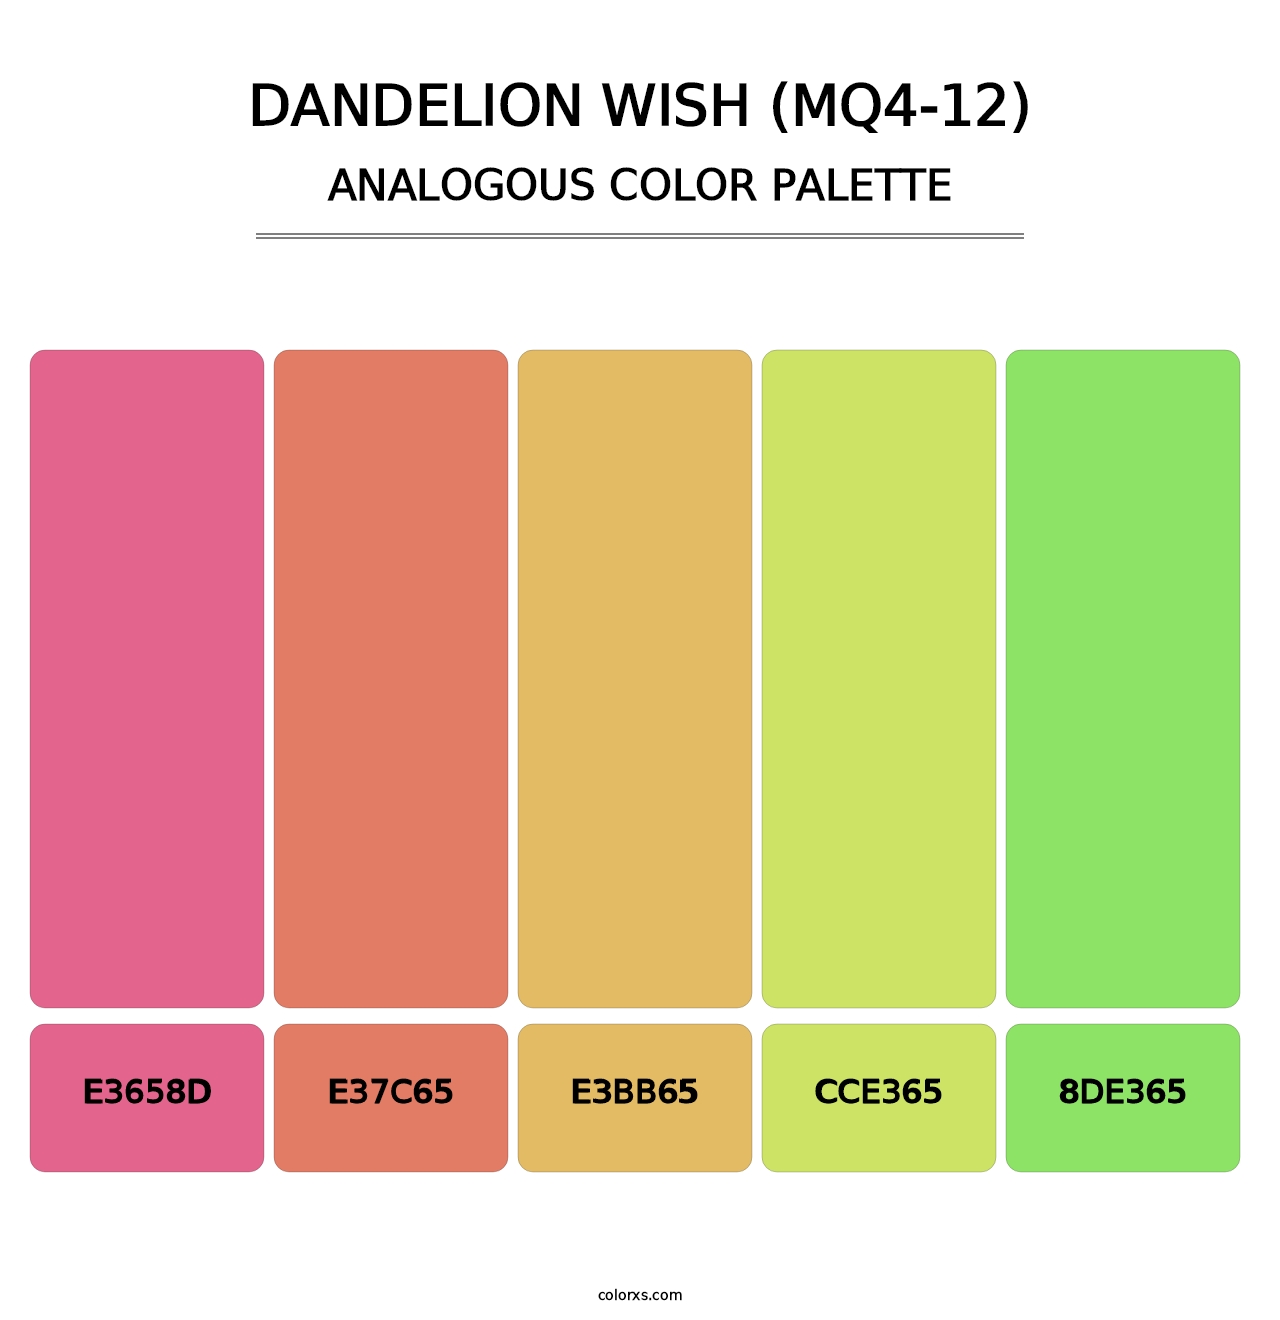 Dandelion Wish (MQ4-12) - Analogous Color Palette